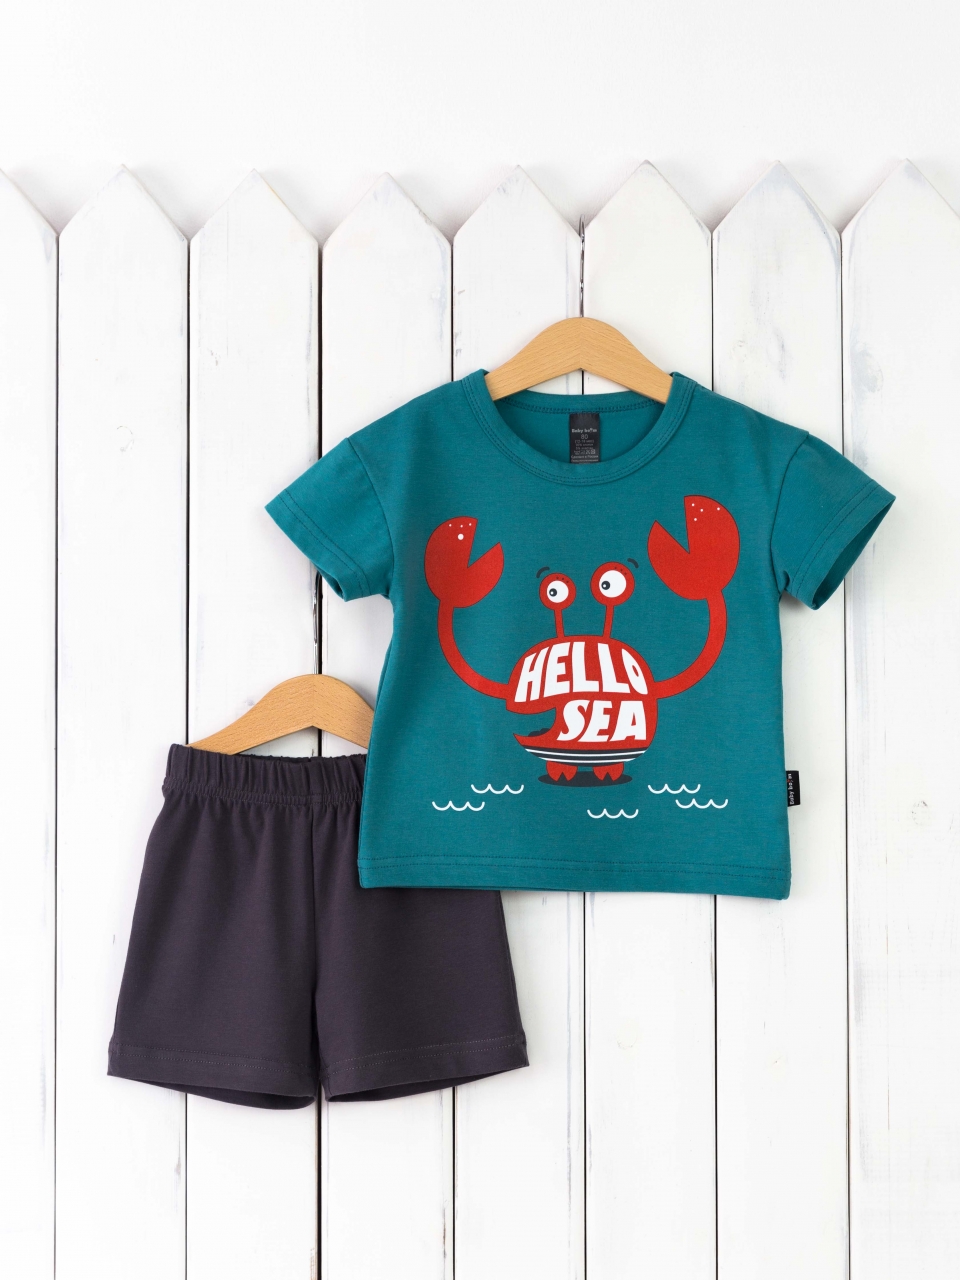 КД467/1-К Комплект р.80 футболка/морская волна+шорты графит Бэби Бум